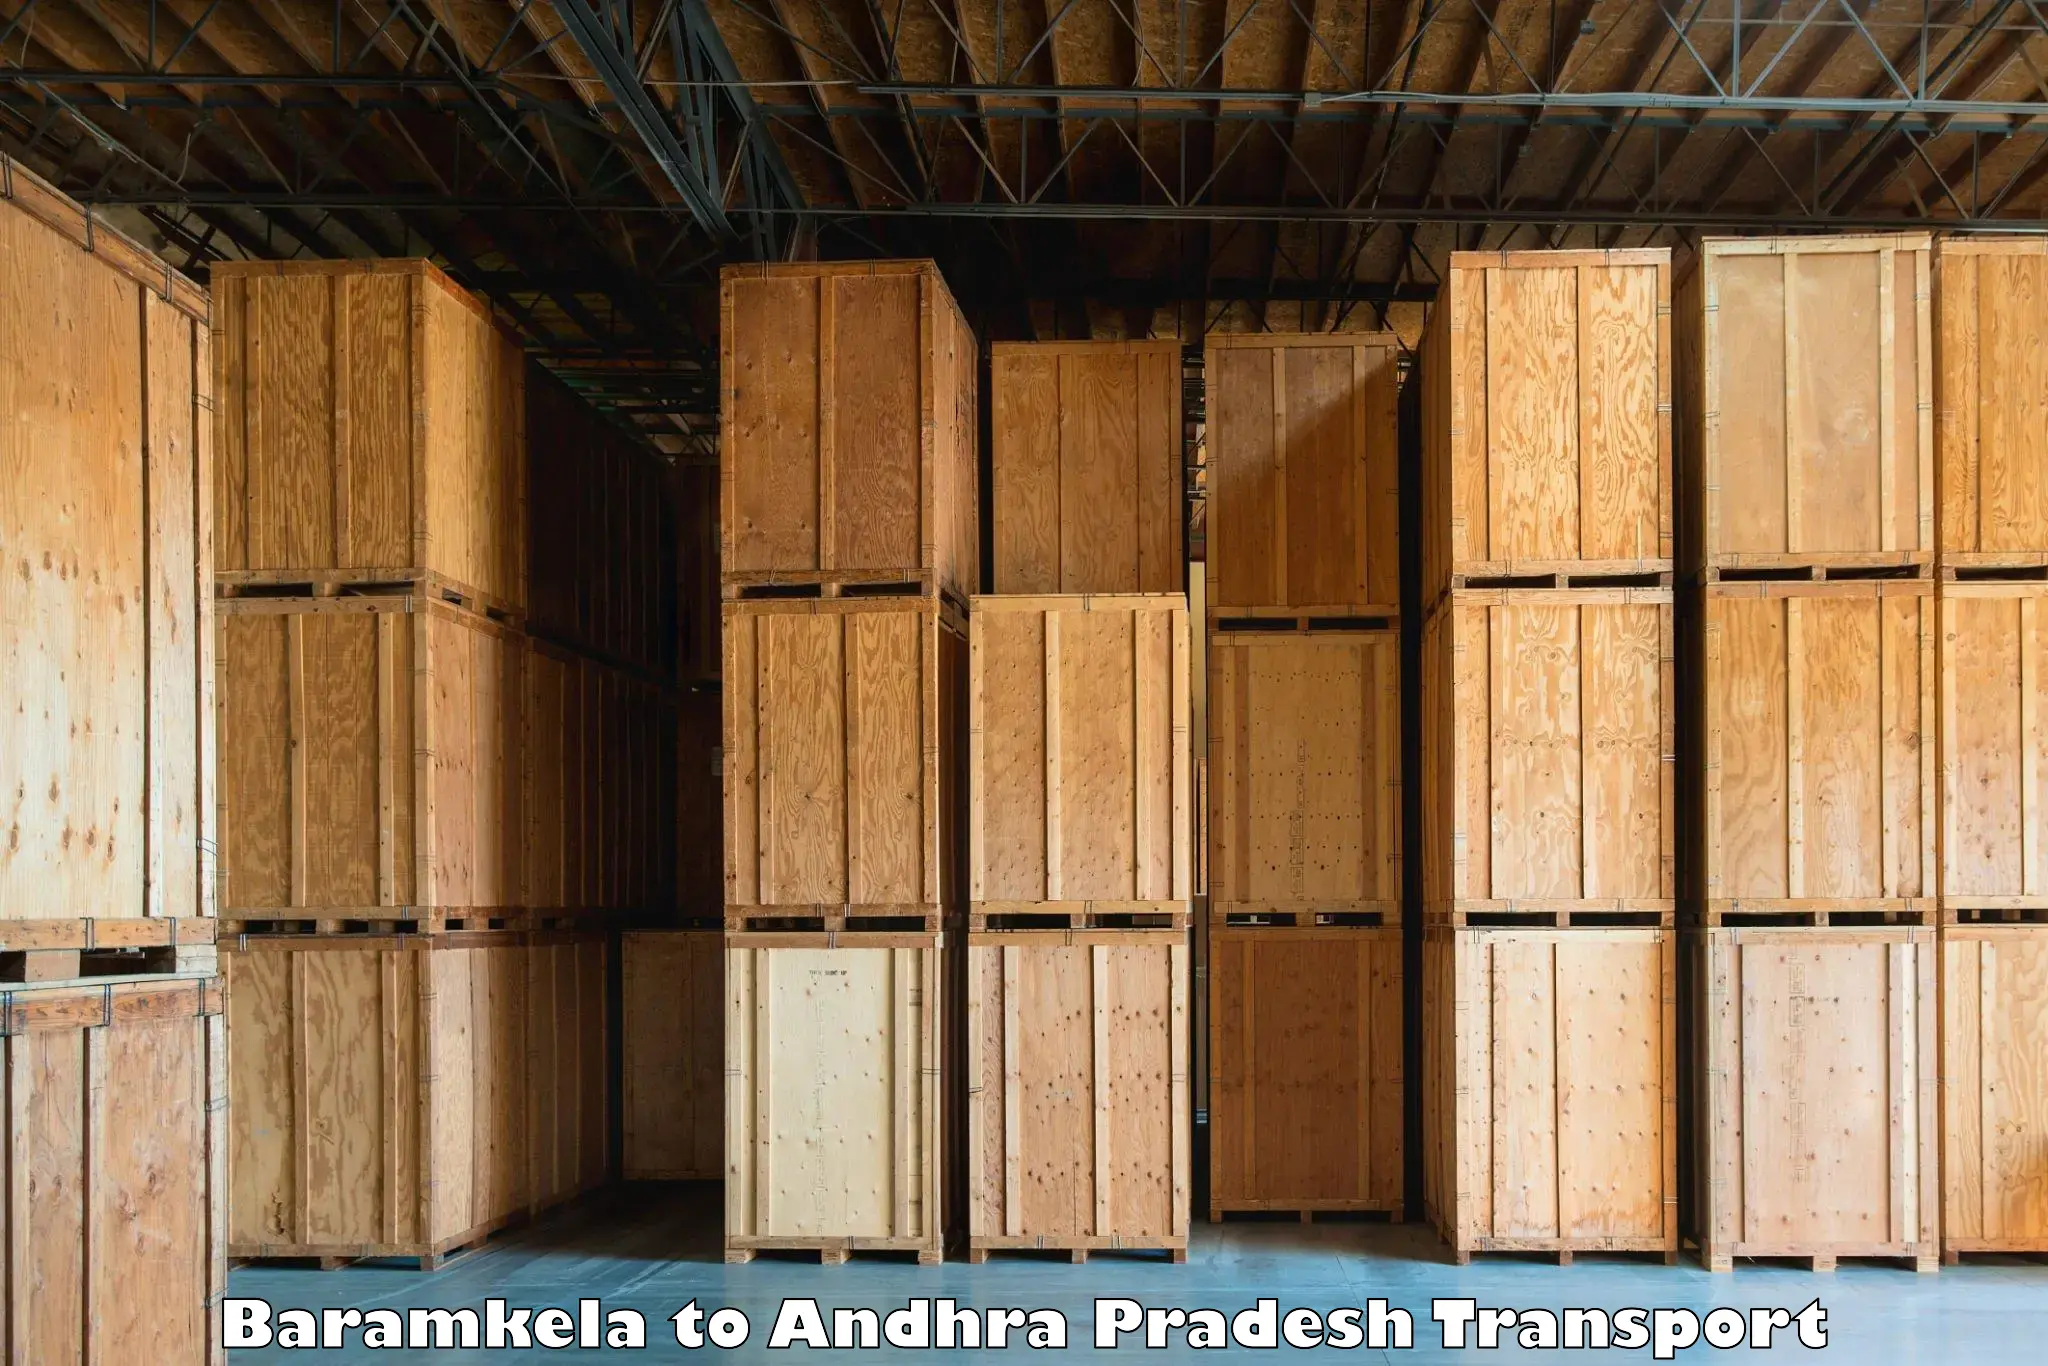 Container transportation services Baramkela to Guntakal